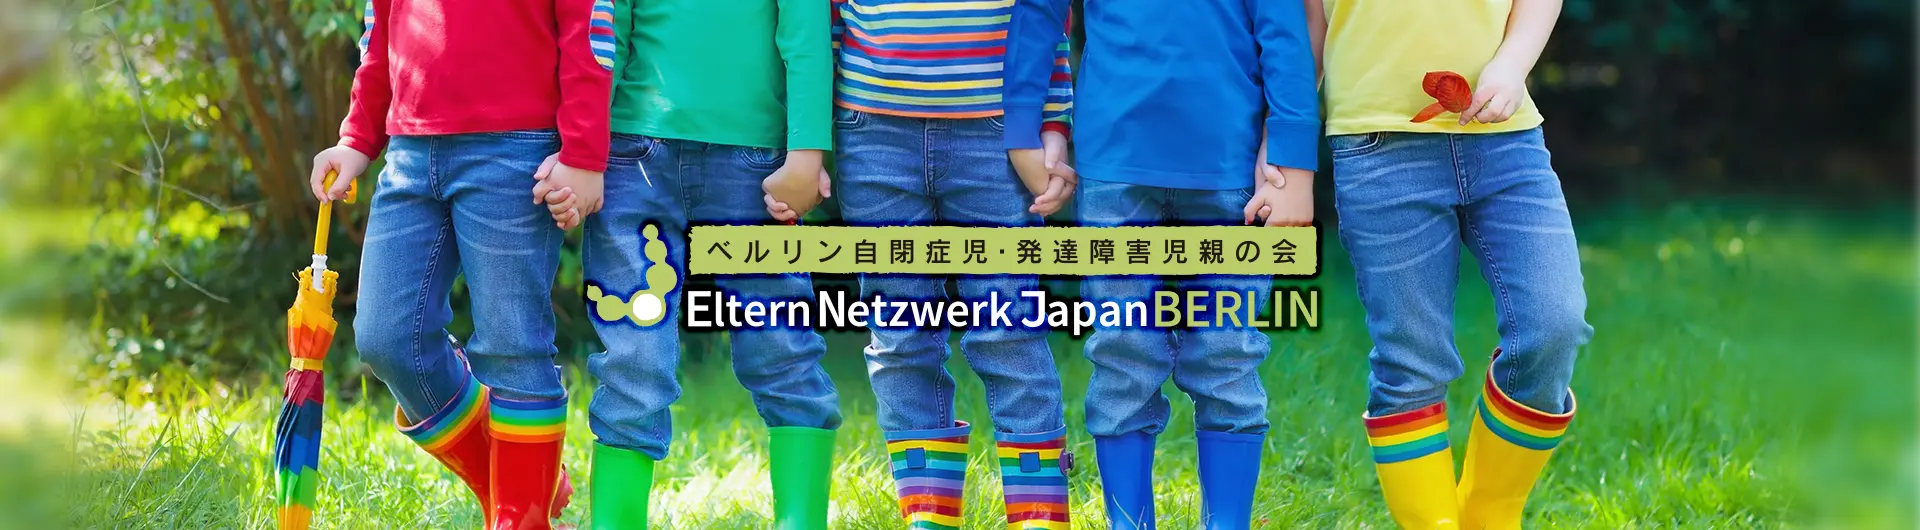 Eltern Netzwerk Japan Berlin - ベルリン自閉症児・発達障害児親の会